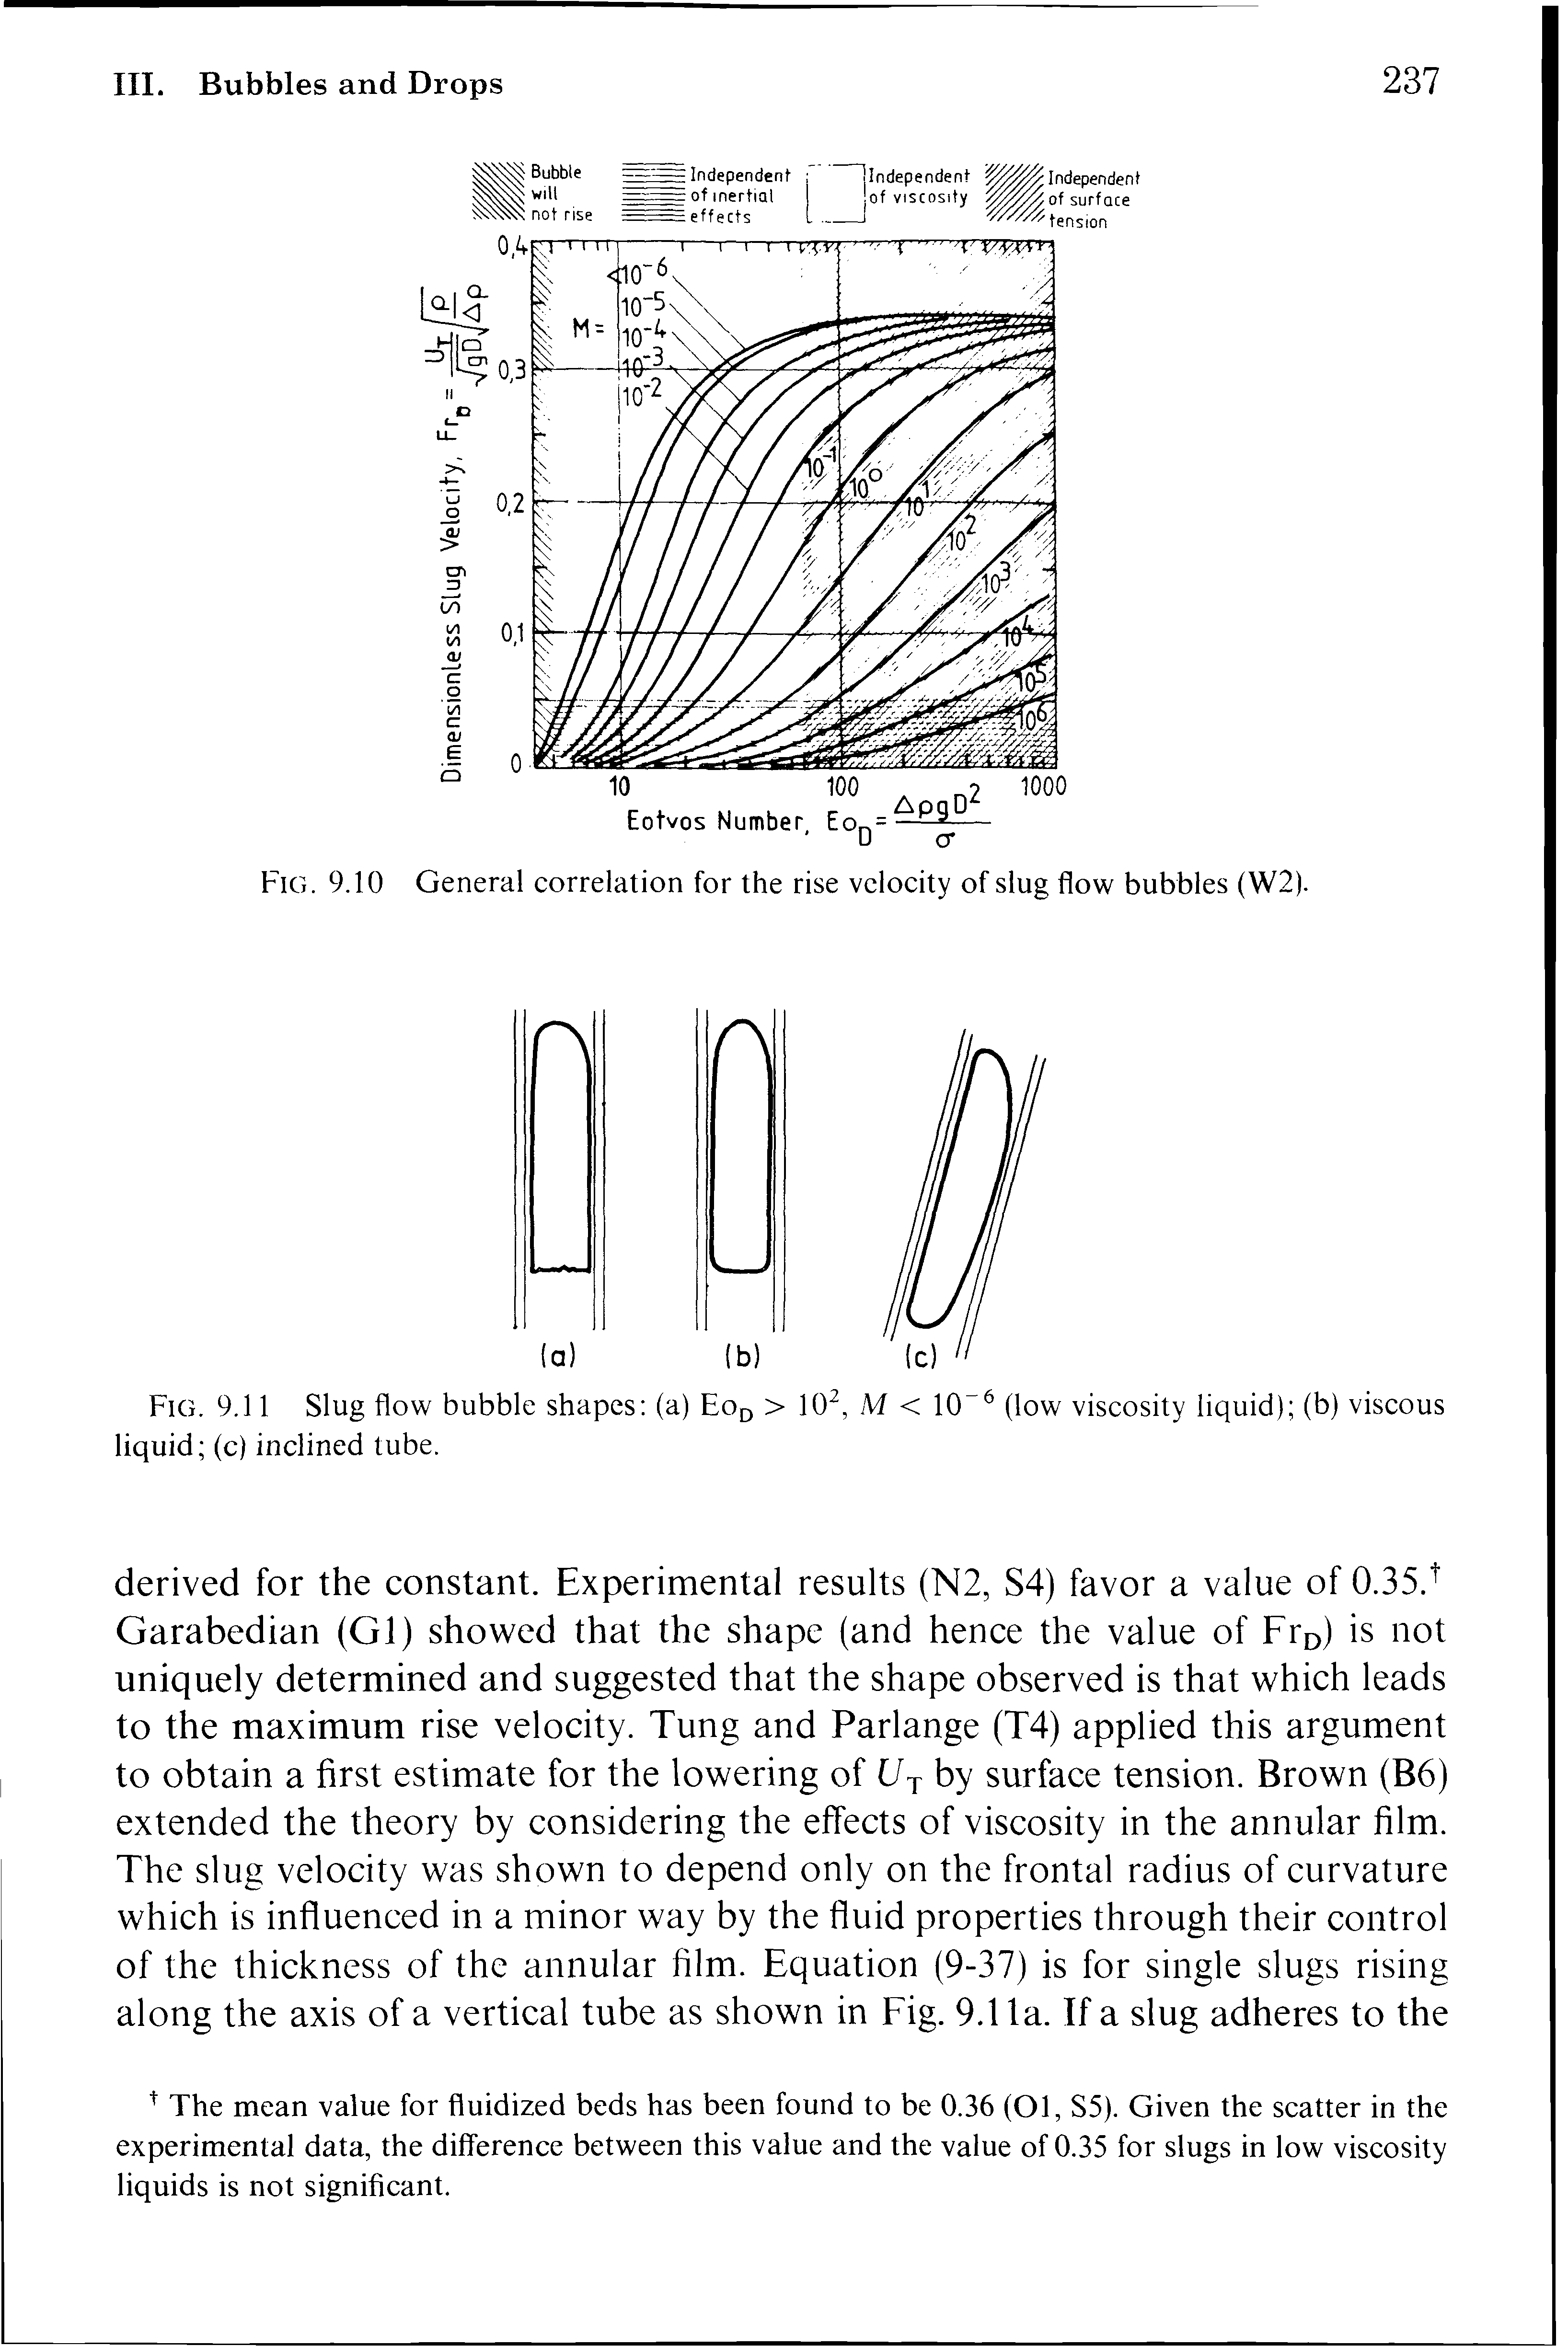 Fig. 9.11 Slug flow bubble shapes (a) Eo > 10, M < 10 (low viscosity liquid) (b) viscous liquid (c) inclined tube.